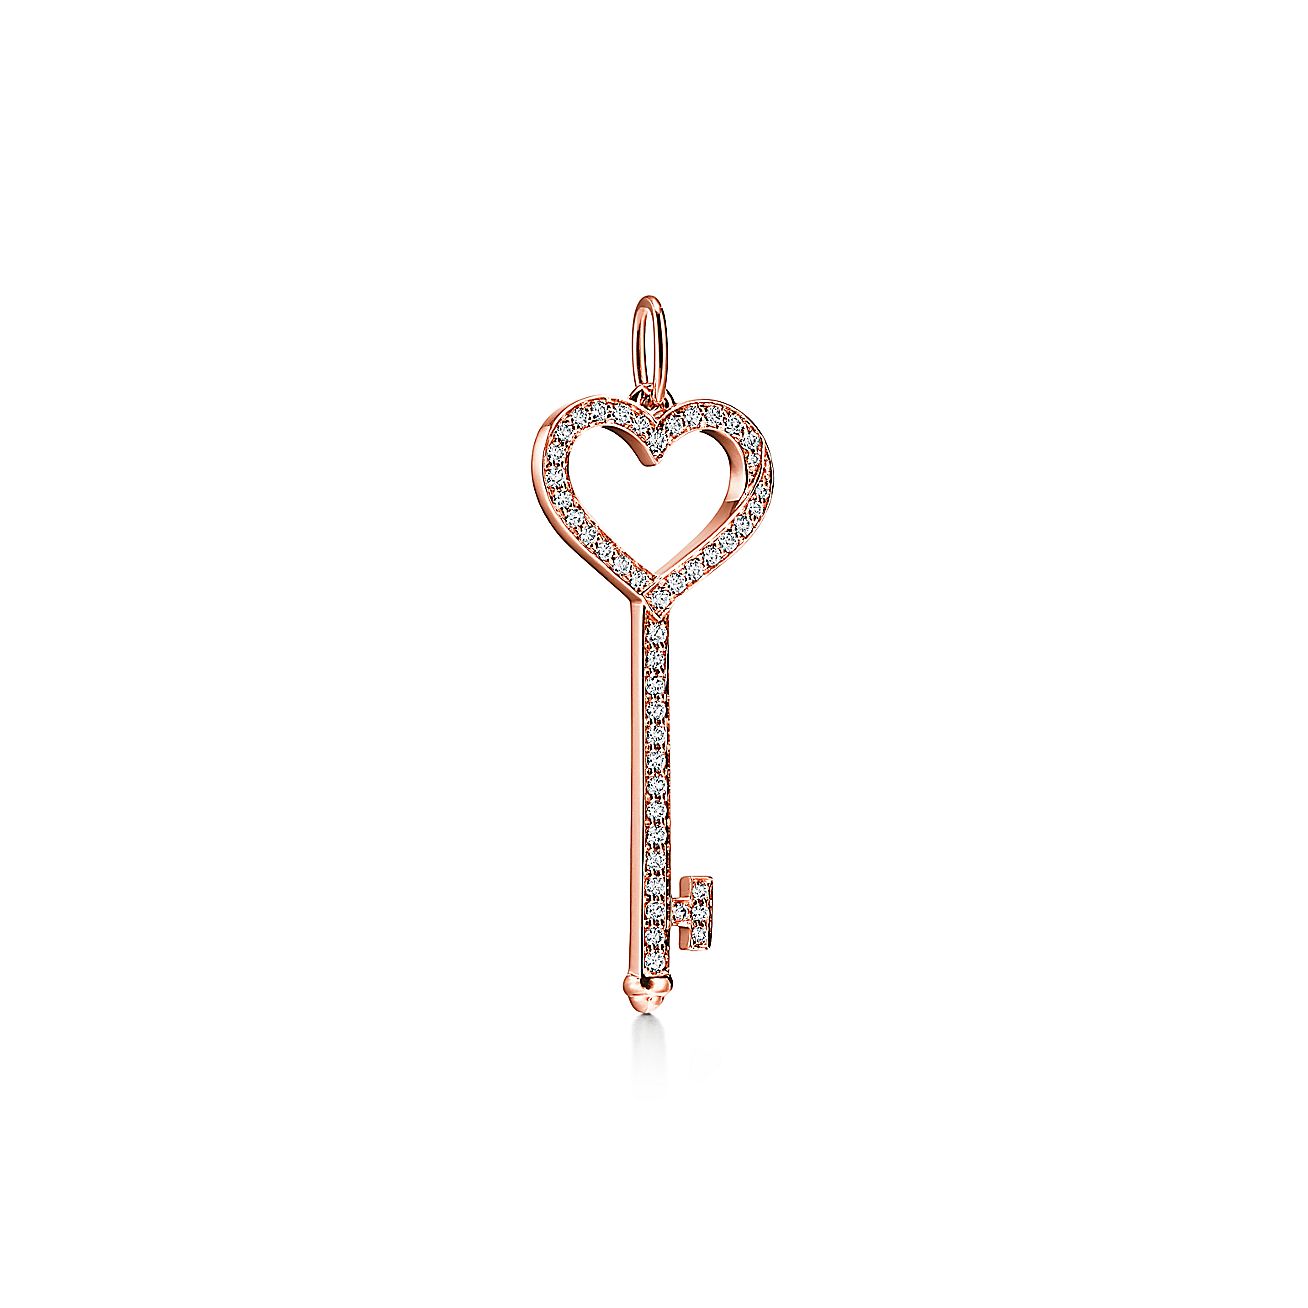 Tiffany Keys Heart Key in Silver, Mini